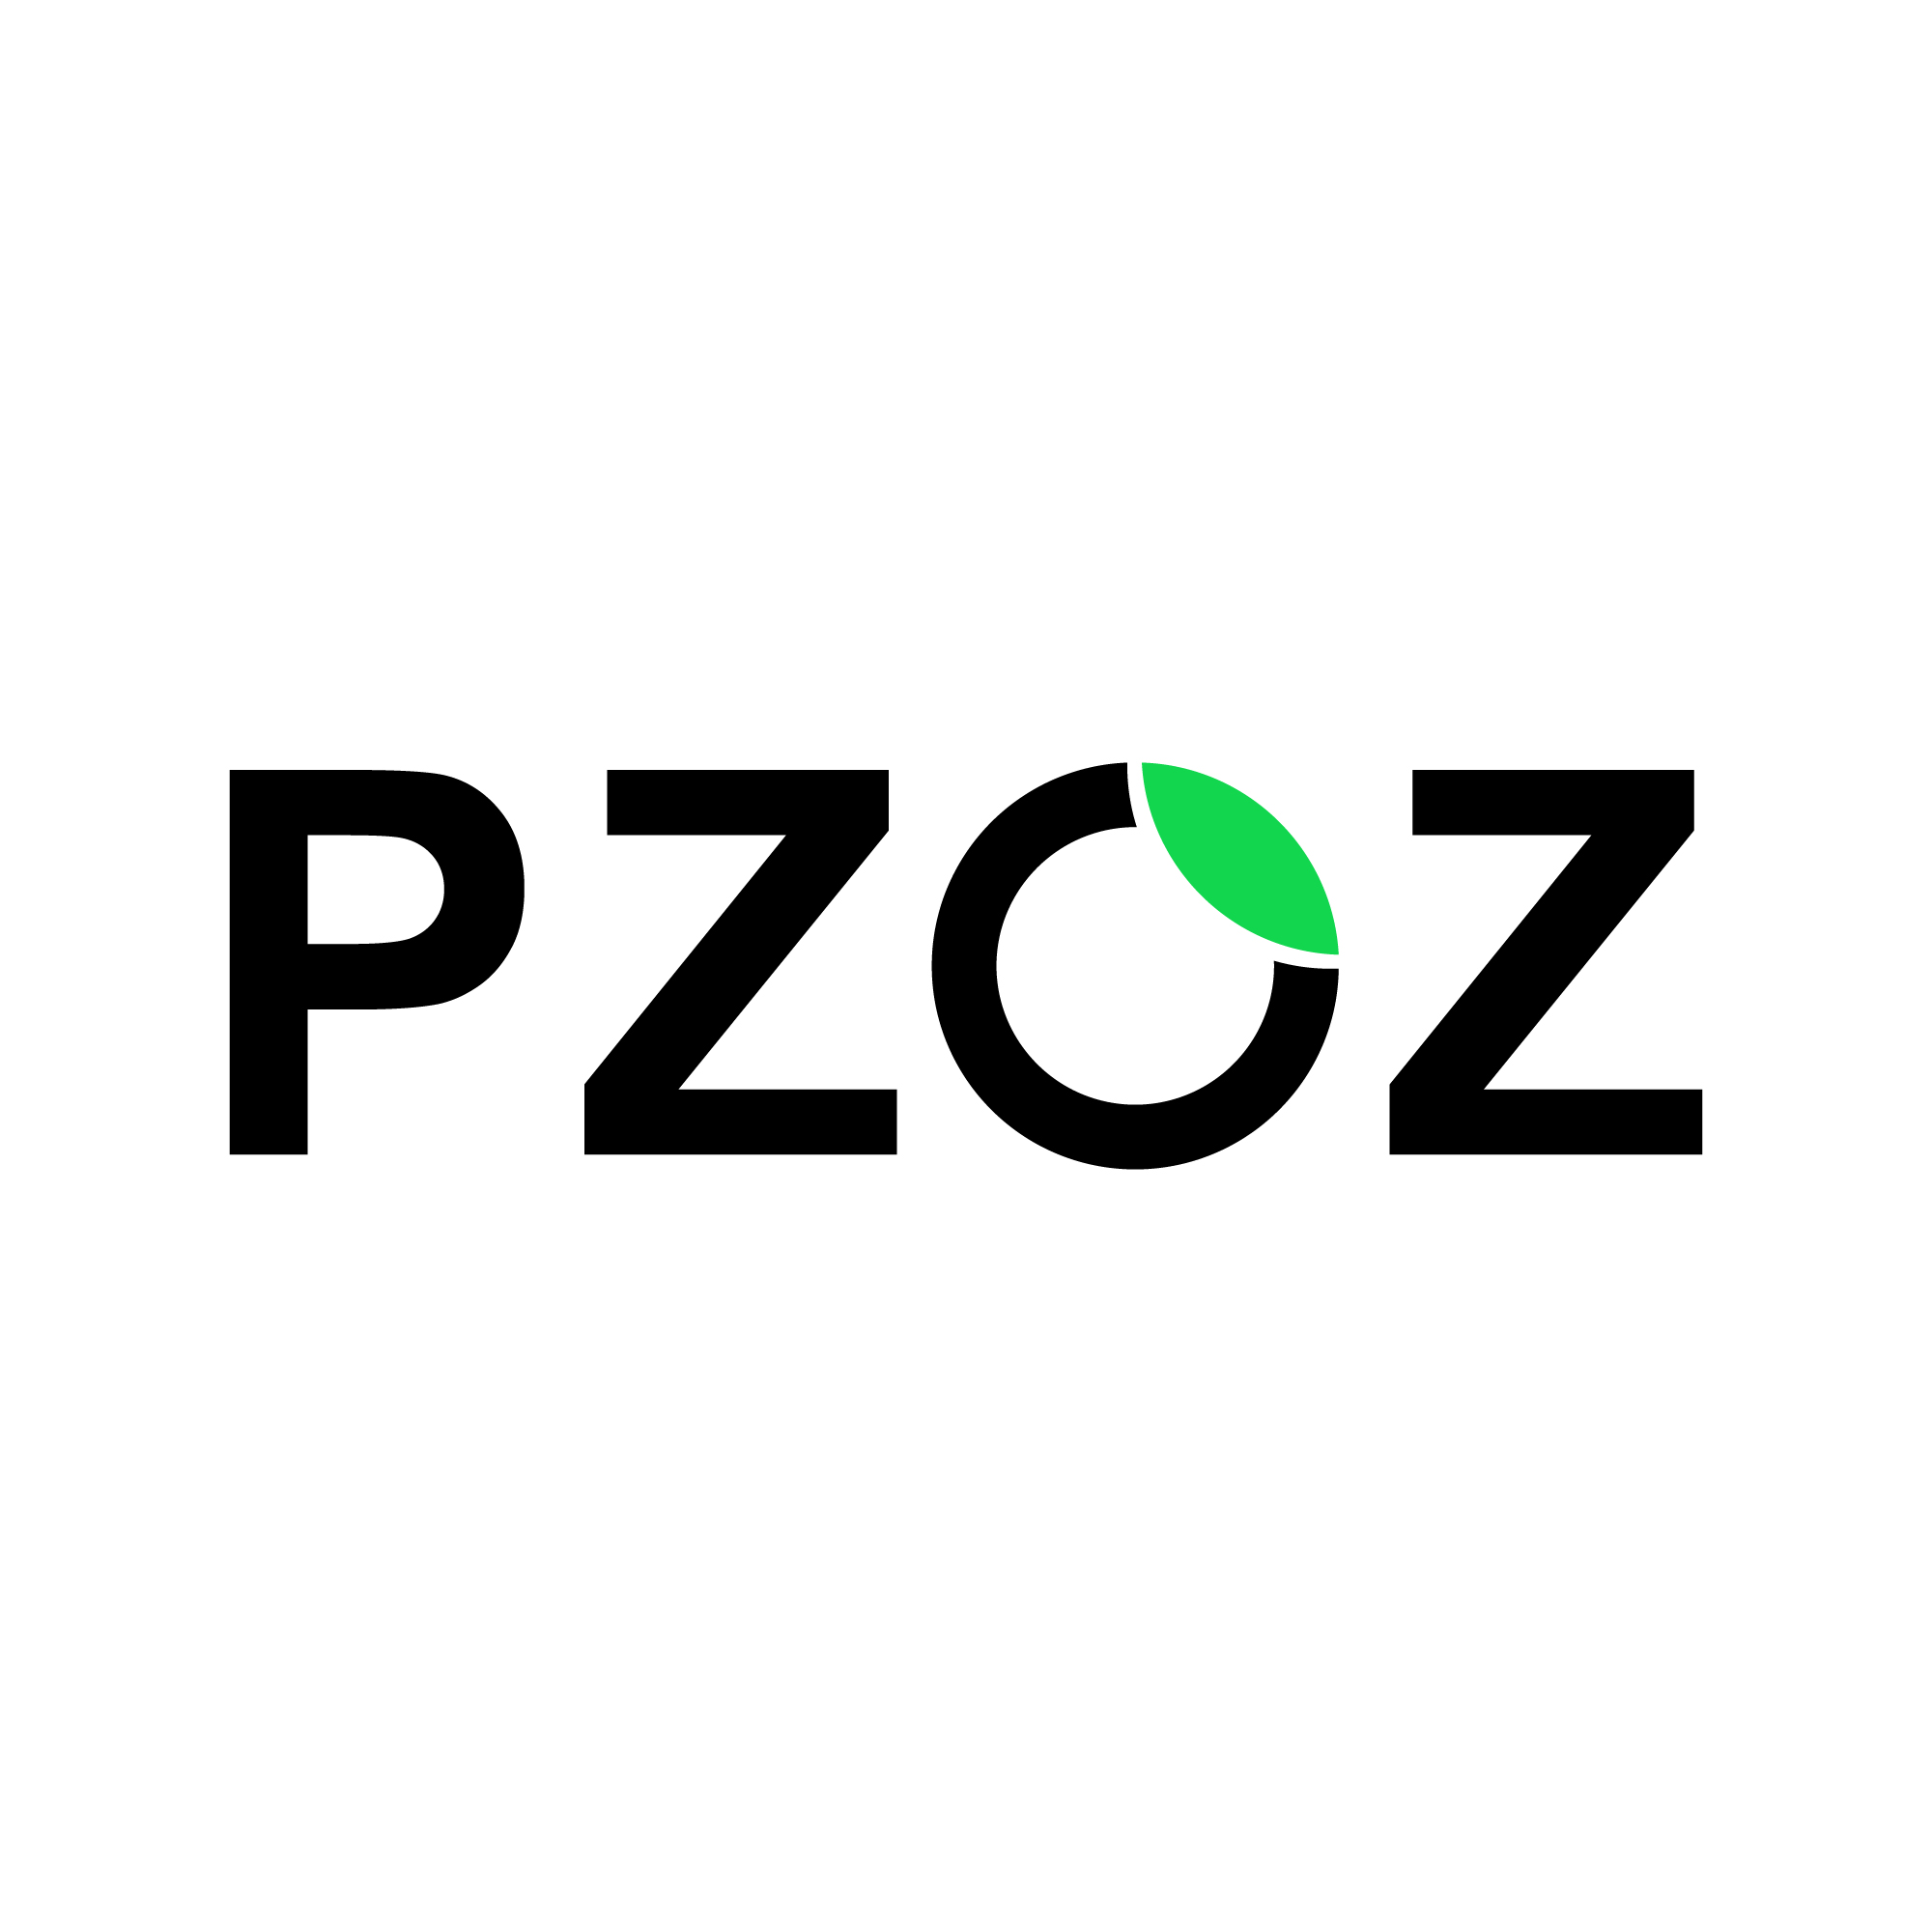  pzoz数码旗舰店